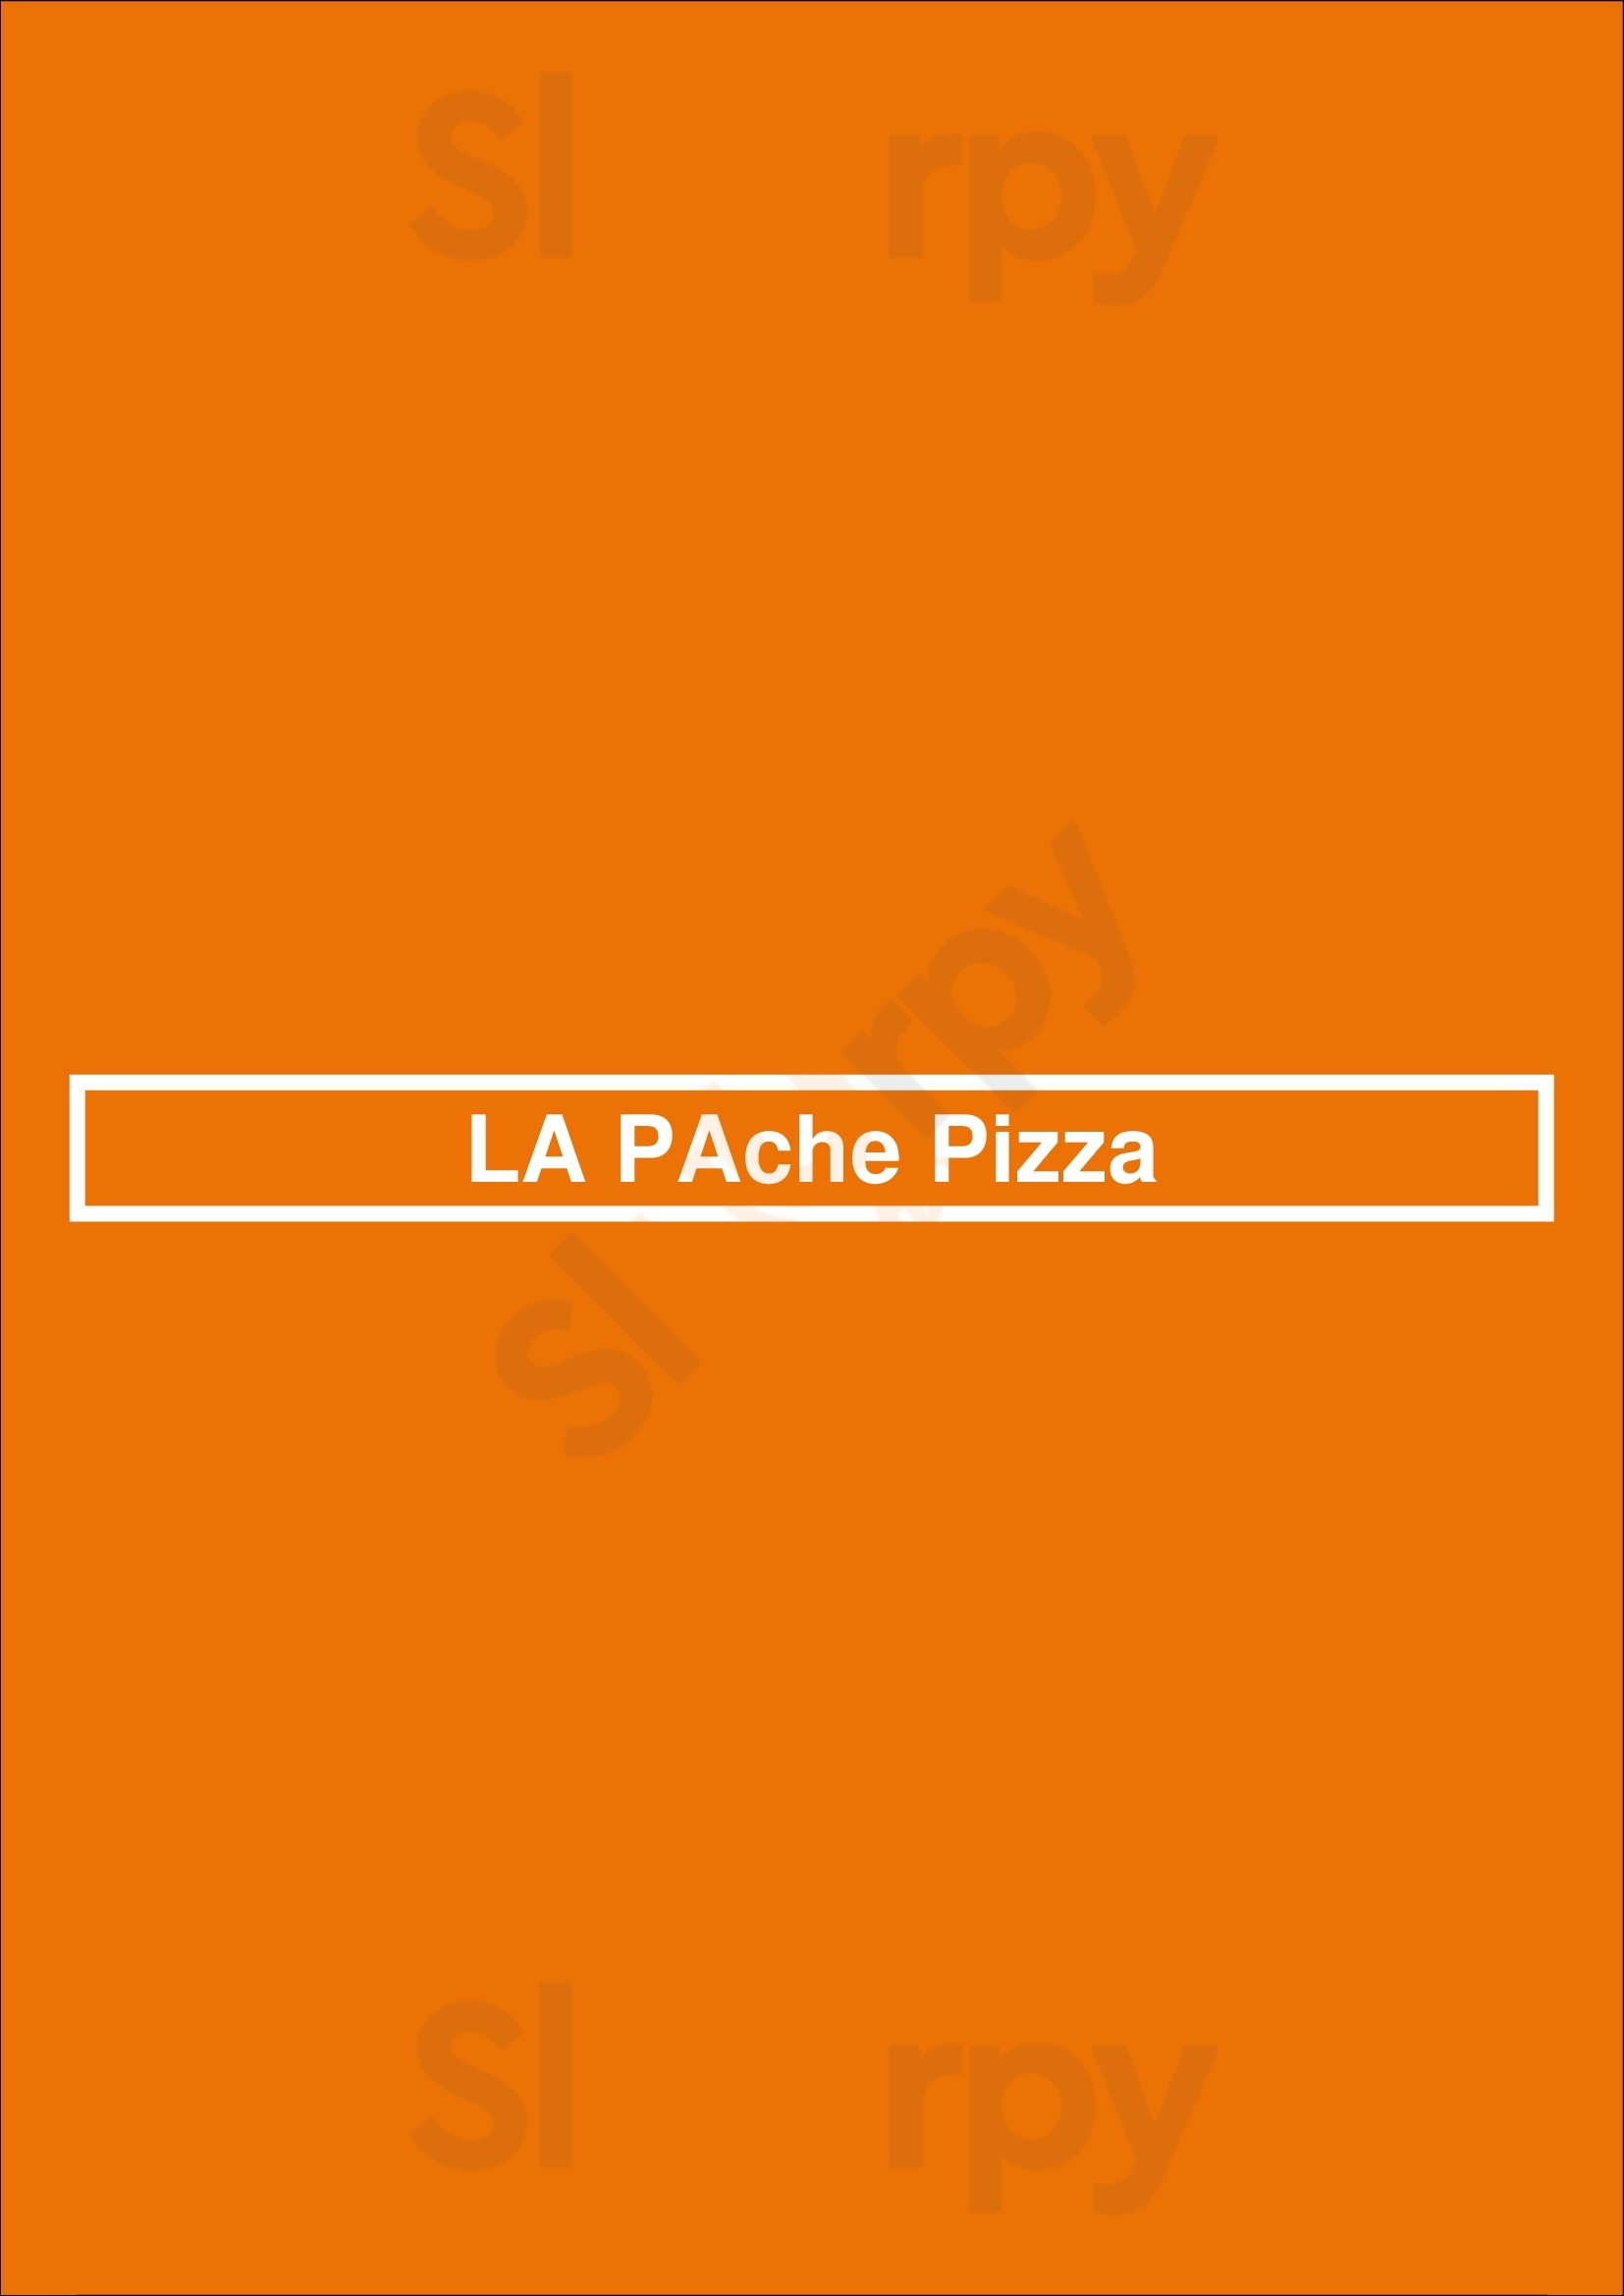 La Pache Pizza Vancouver Menu - 1